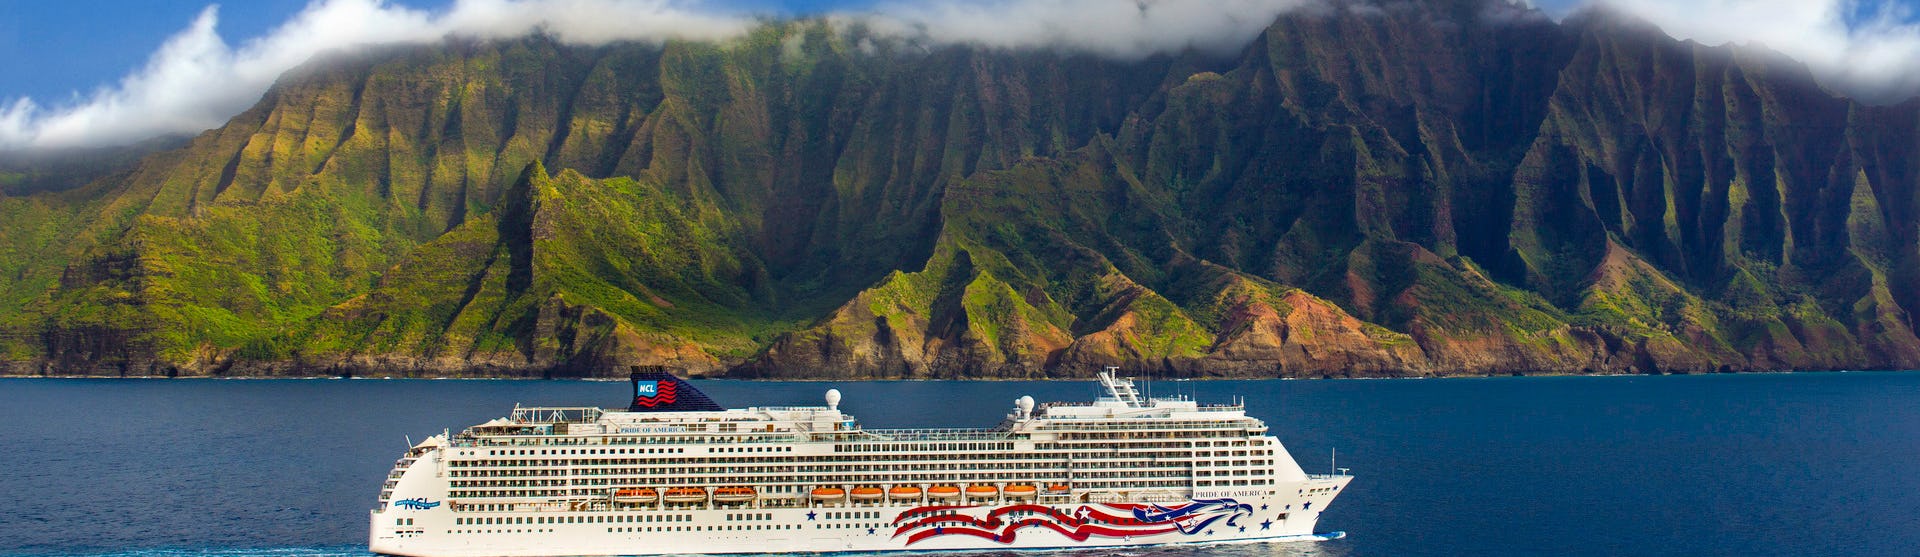 Fartyget Pride of America kryssas i det kristallblå vattnet utanför Hawaiis kust med storslagen natur och berg i bakgrunden.